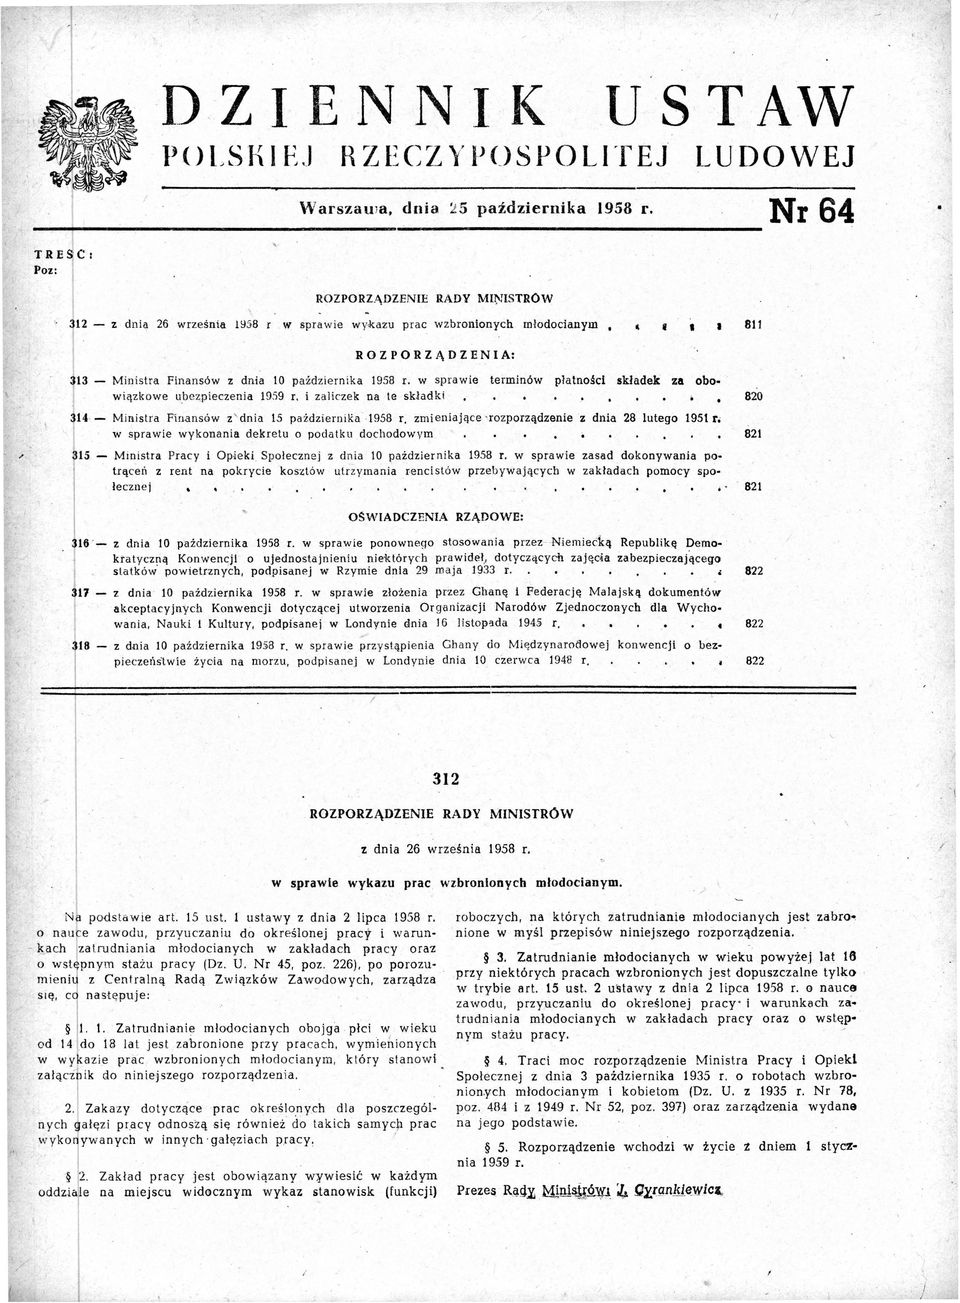 w sprawie terminów płatności składek za obowiązkowe ubez.pieczenia 1959. r. i zaliczek na te skladki 820 4 - Ministra Finansów z' dnia 15 października 1958 r.